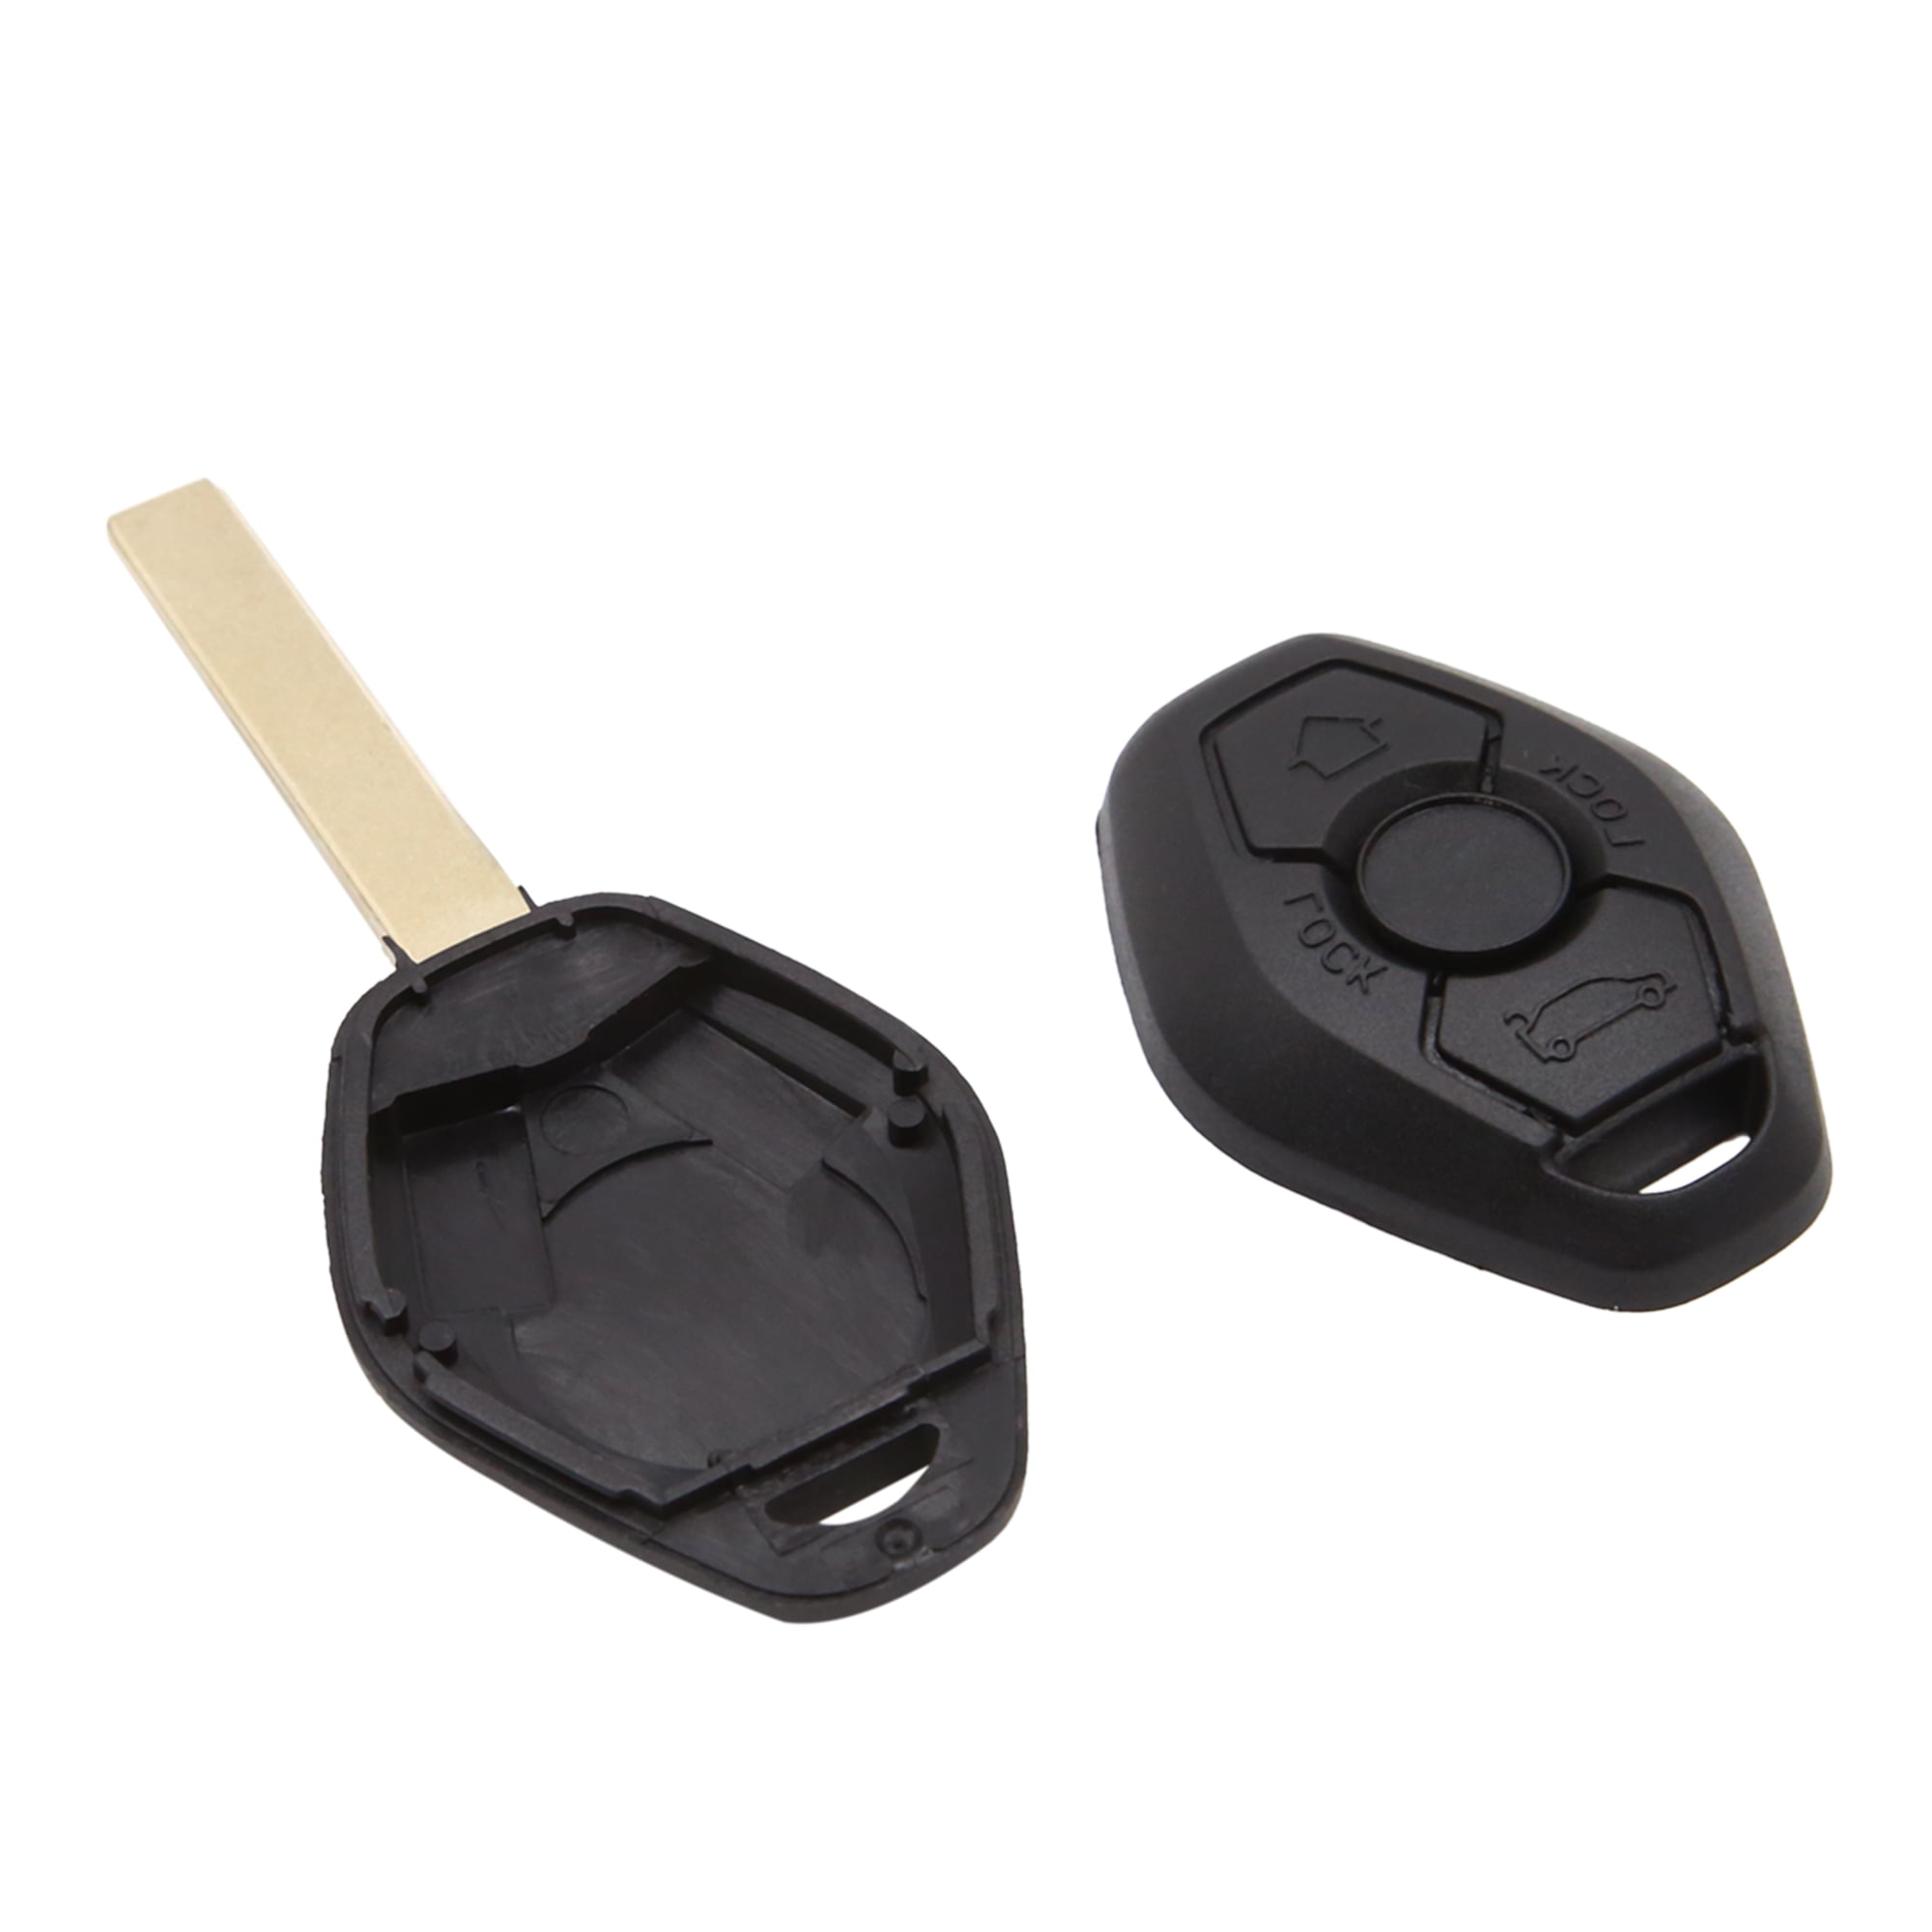 Remote Key Fob 3 Button Replacement Rubber Pad Cover For BMW E38 E39 E36 Z3 E46 